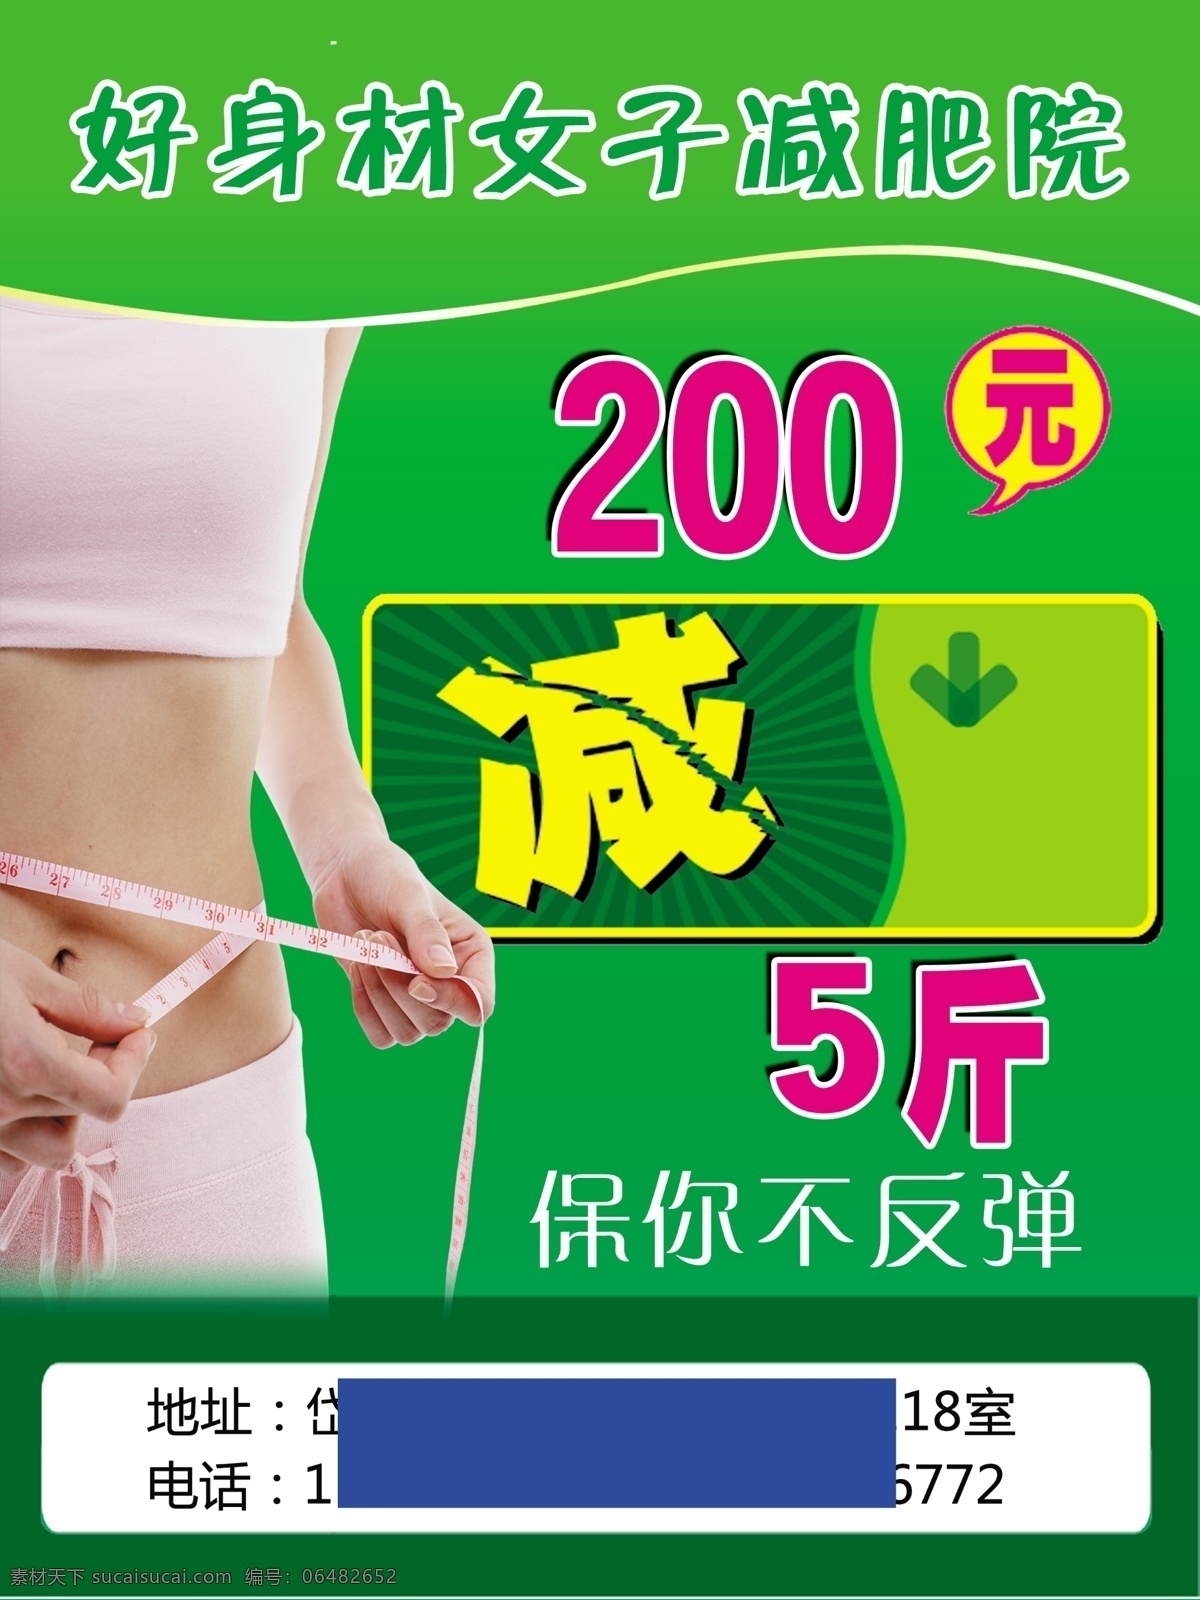 减肥海报 绿色背景 女子减肥 减肥传单 好身材 海报